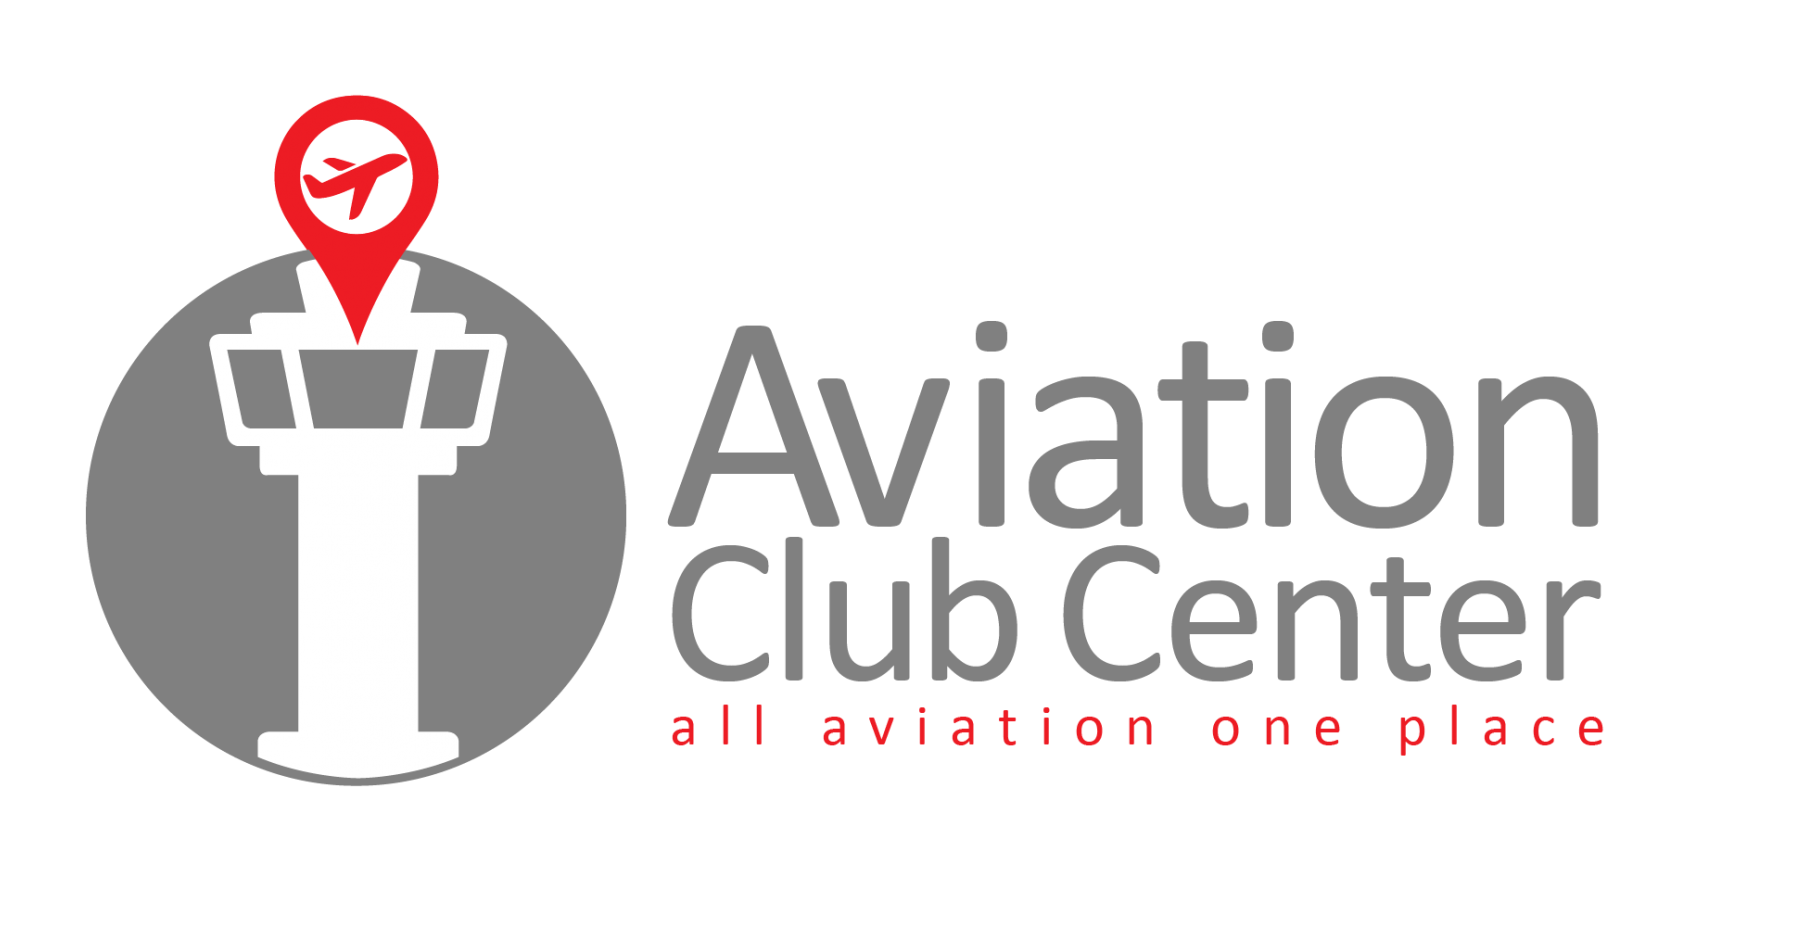 Aviation Club Center